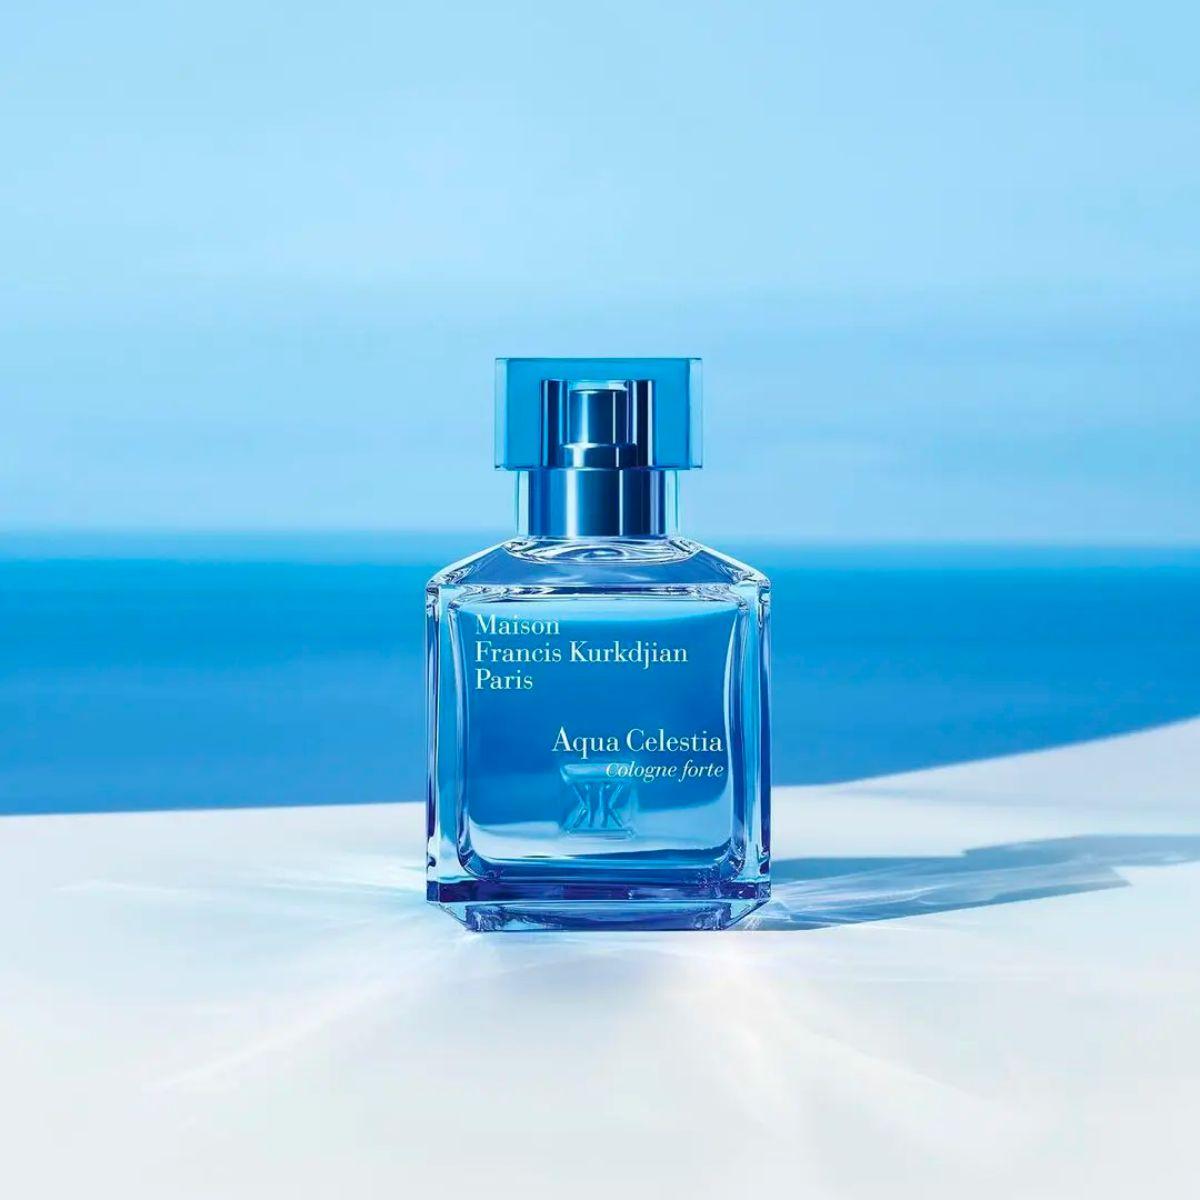 Image of Aqua Celestia Cologne Forte by the perfume brand Maison Francis Kurkdjian